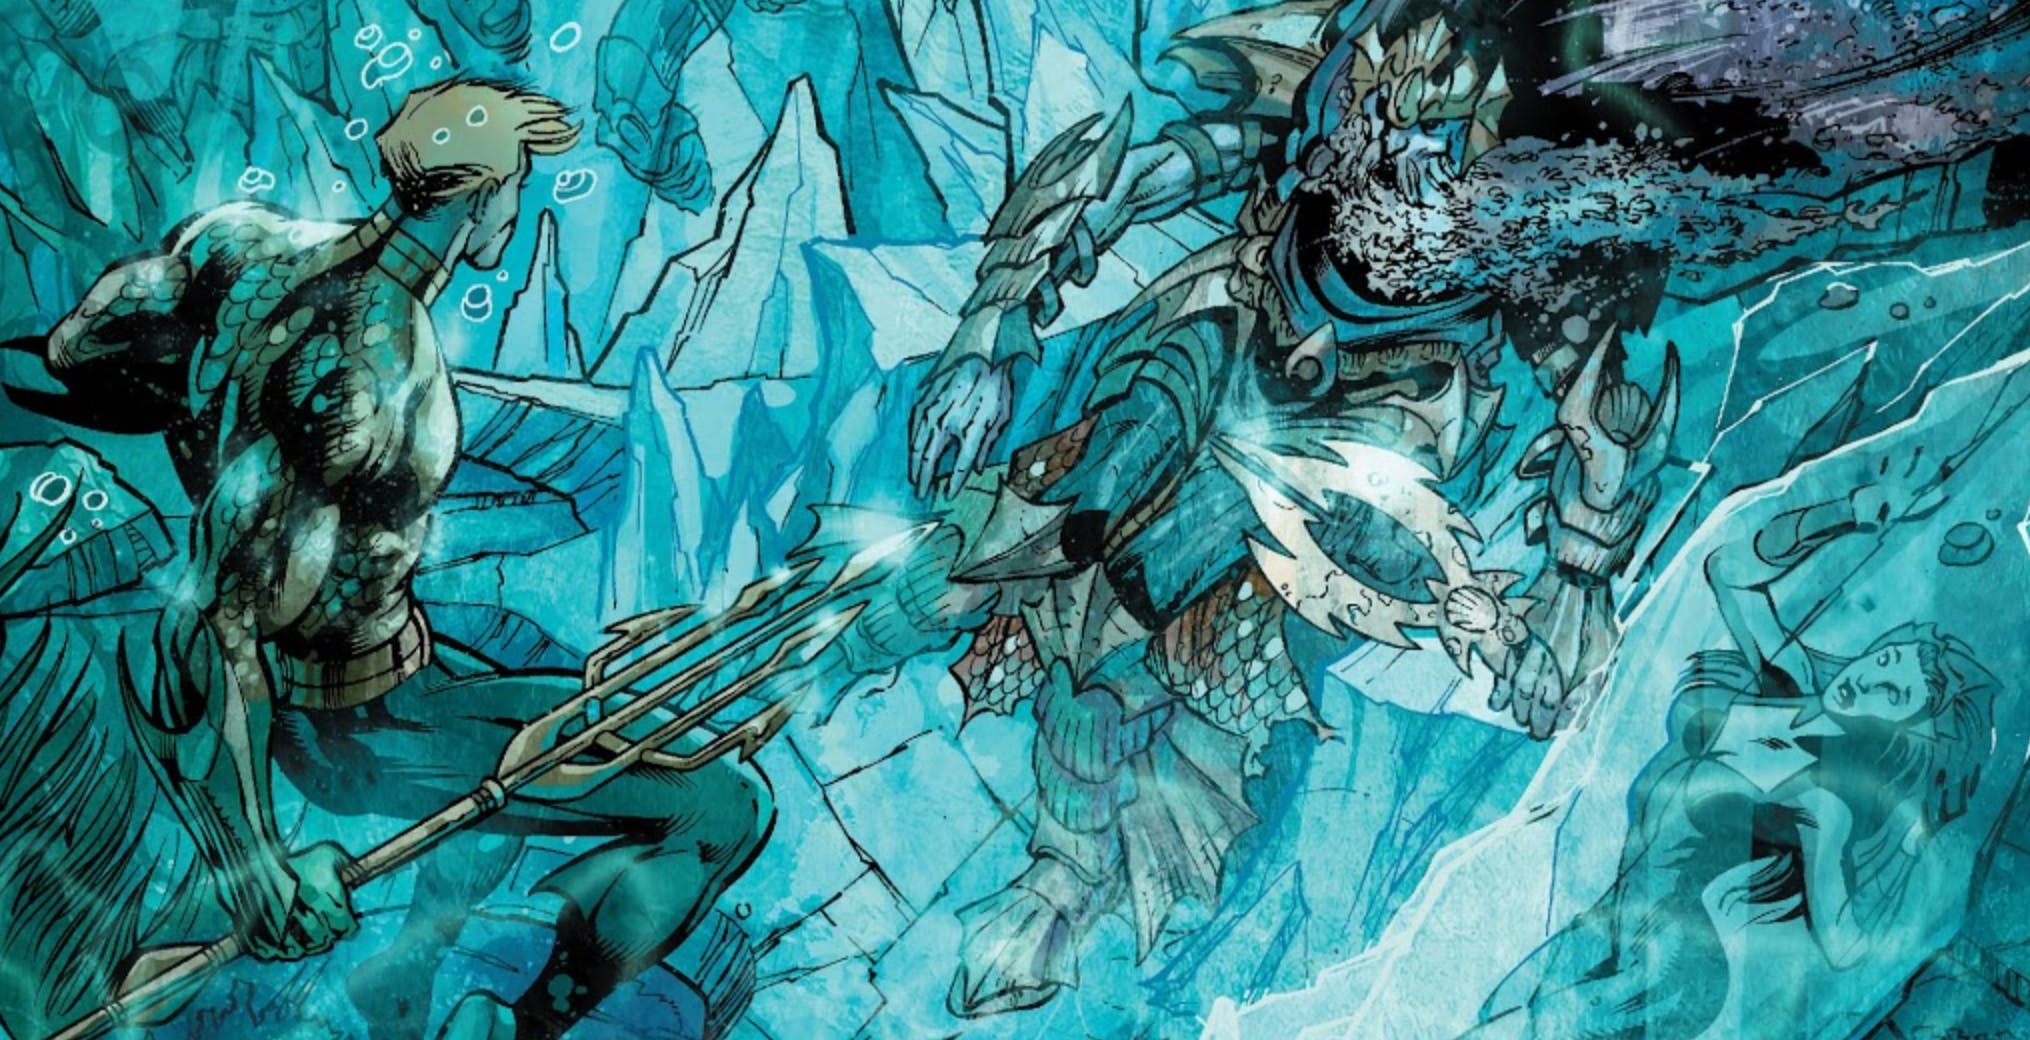 Amenazas marinas: 10 de los villanos más peligrosos de Aquaman 8